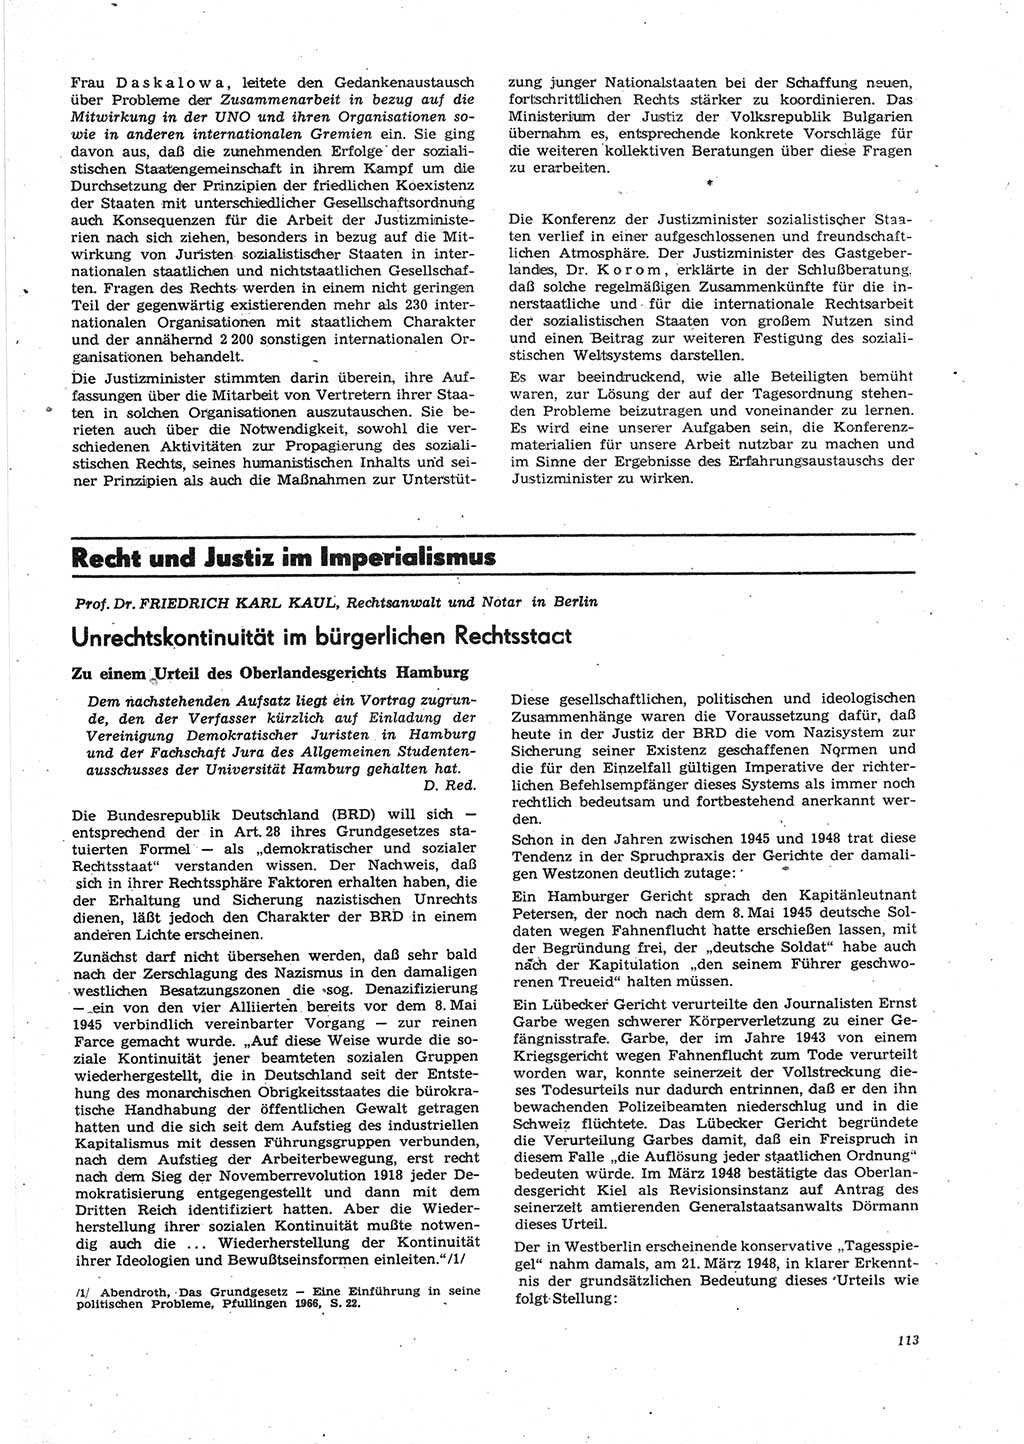 Neue Justiz (NJ), Zeitschrift für Recht und Rechtswissenschaft [Deutsche Demokratische Republik (DDR)], 27. Jahrgang 1973, Seite 113 (NJ DDR 1973, S. 113)